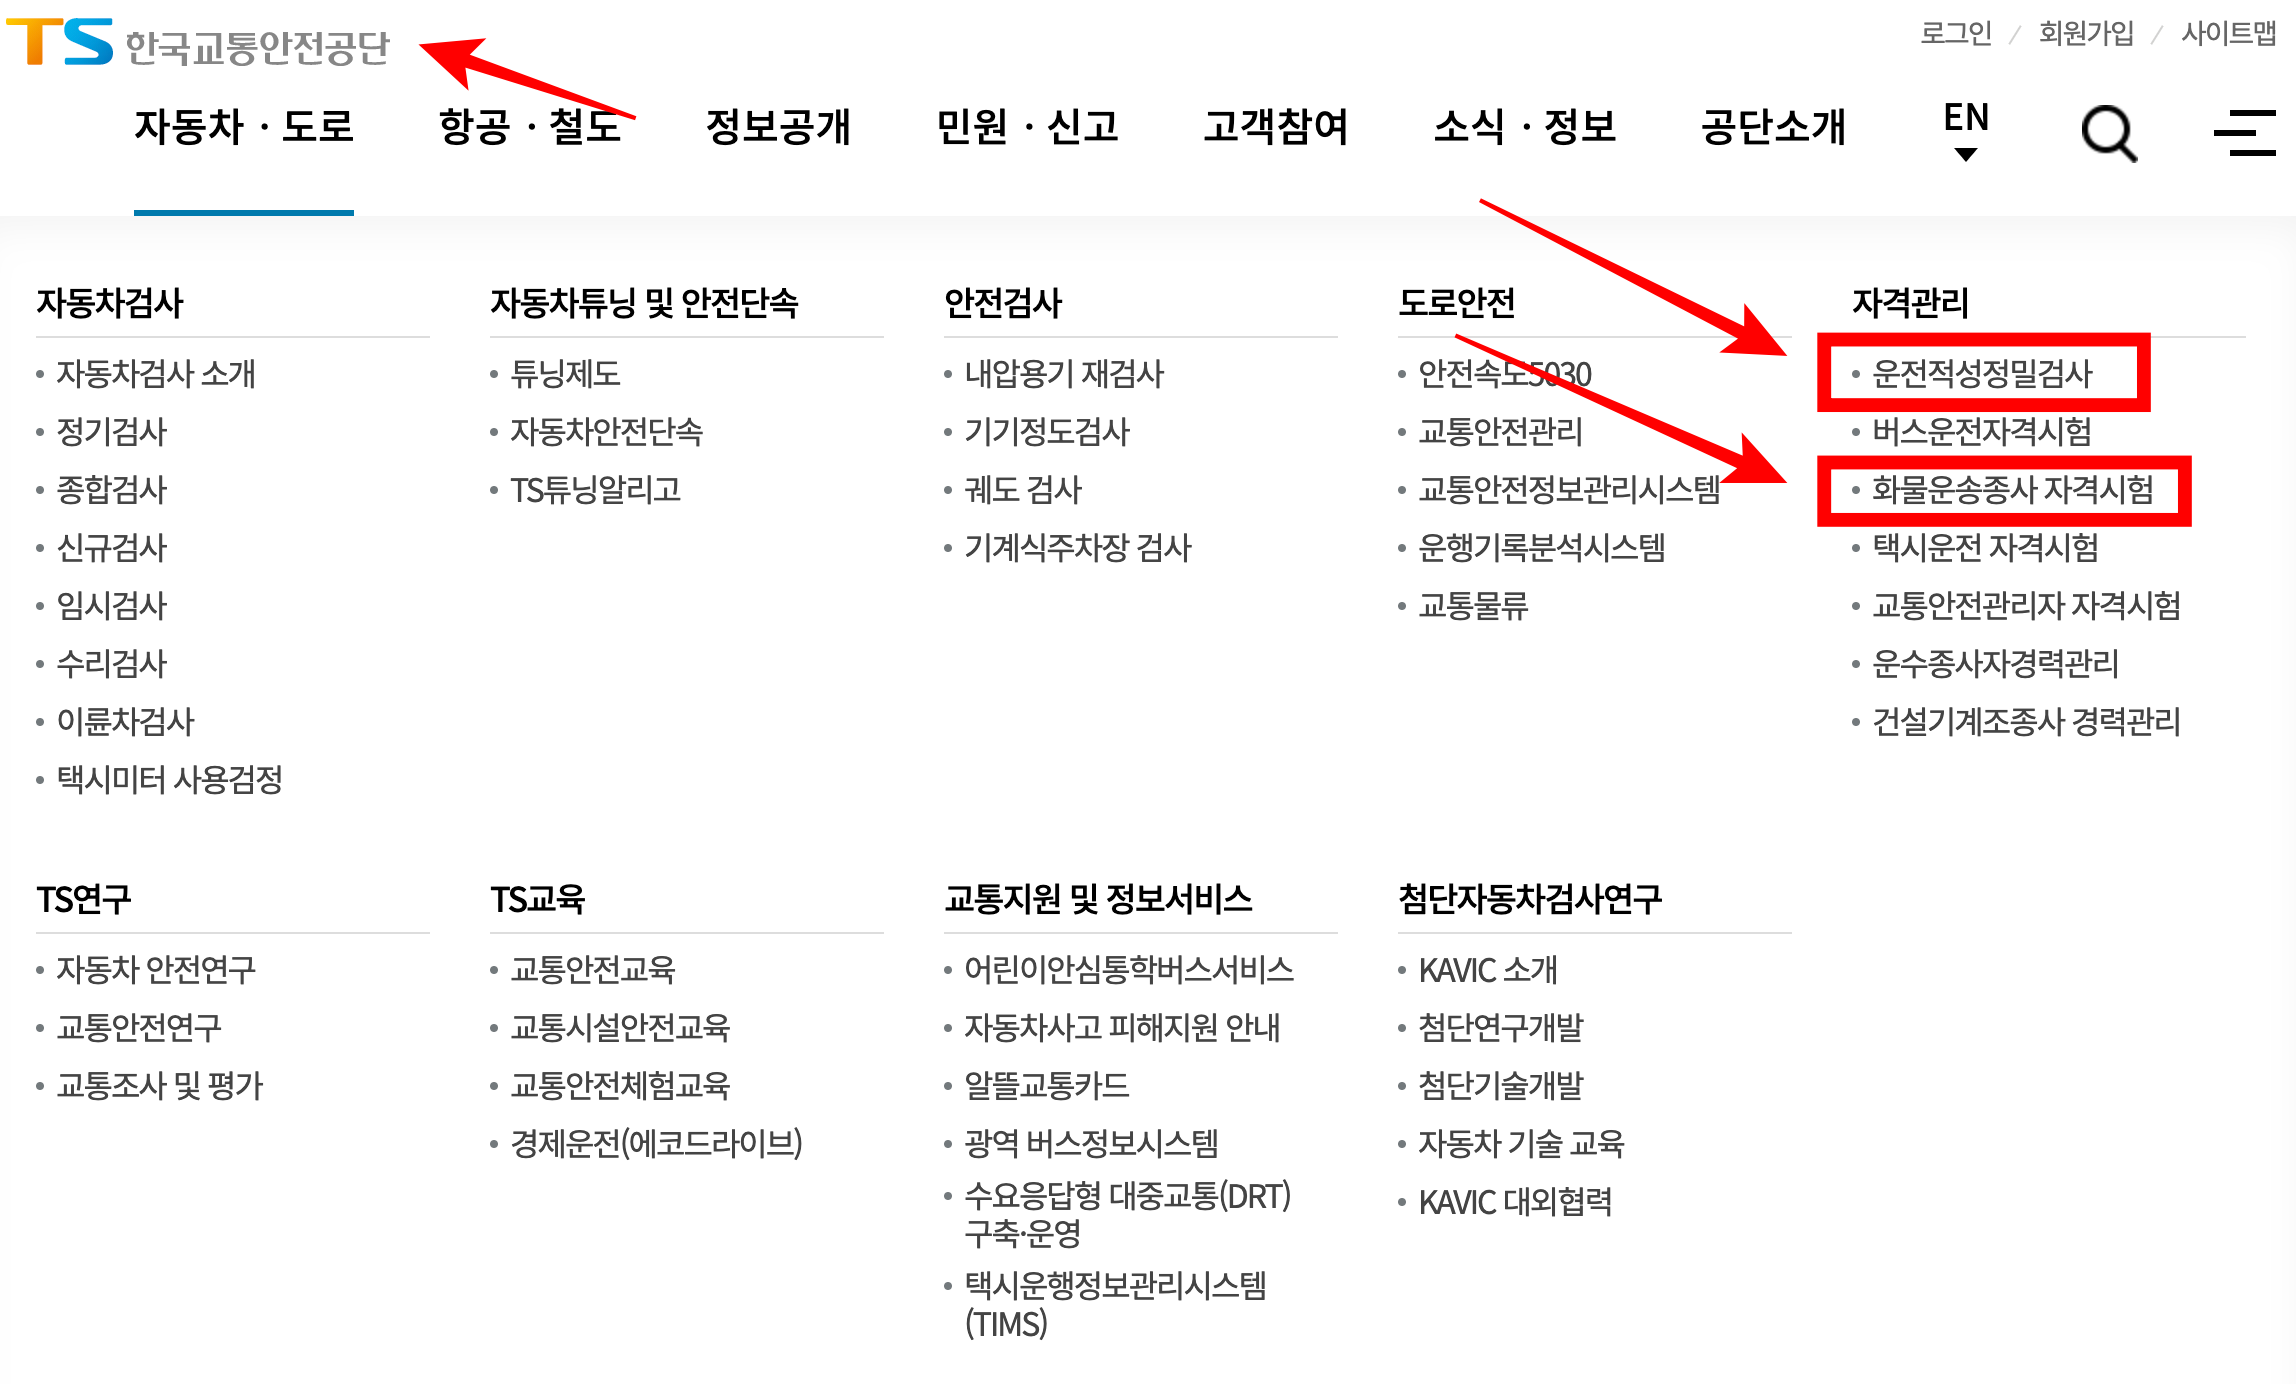 한국교통안전공단-홈페이지-화물운송자사 자격시험-위치 -알림